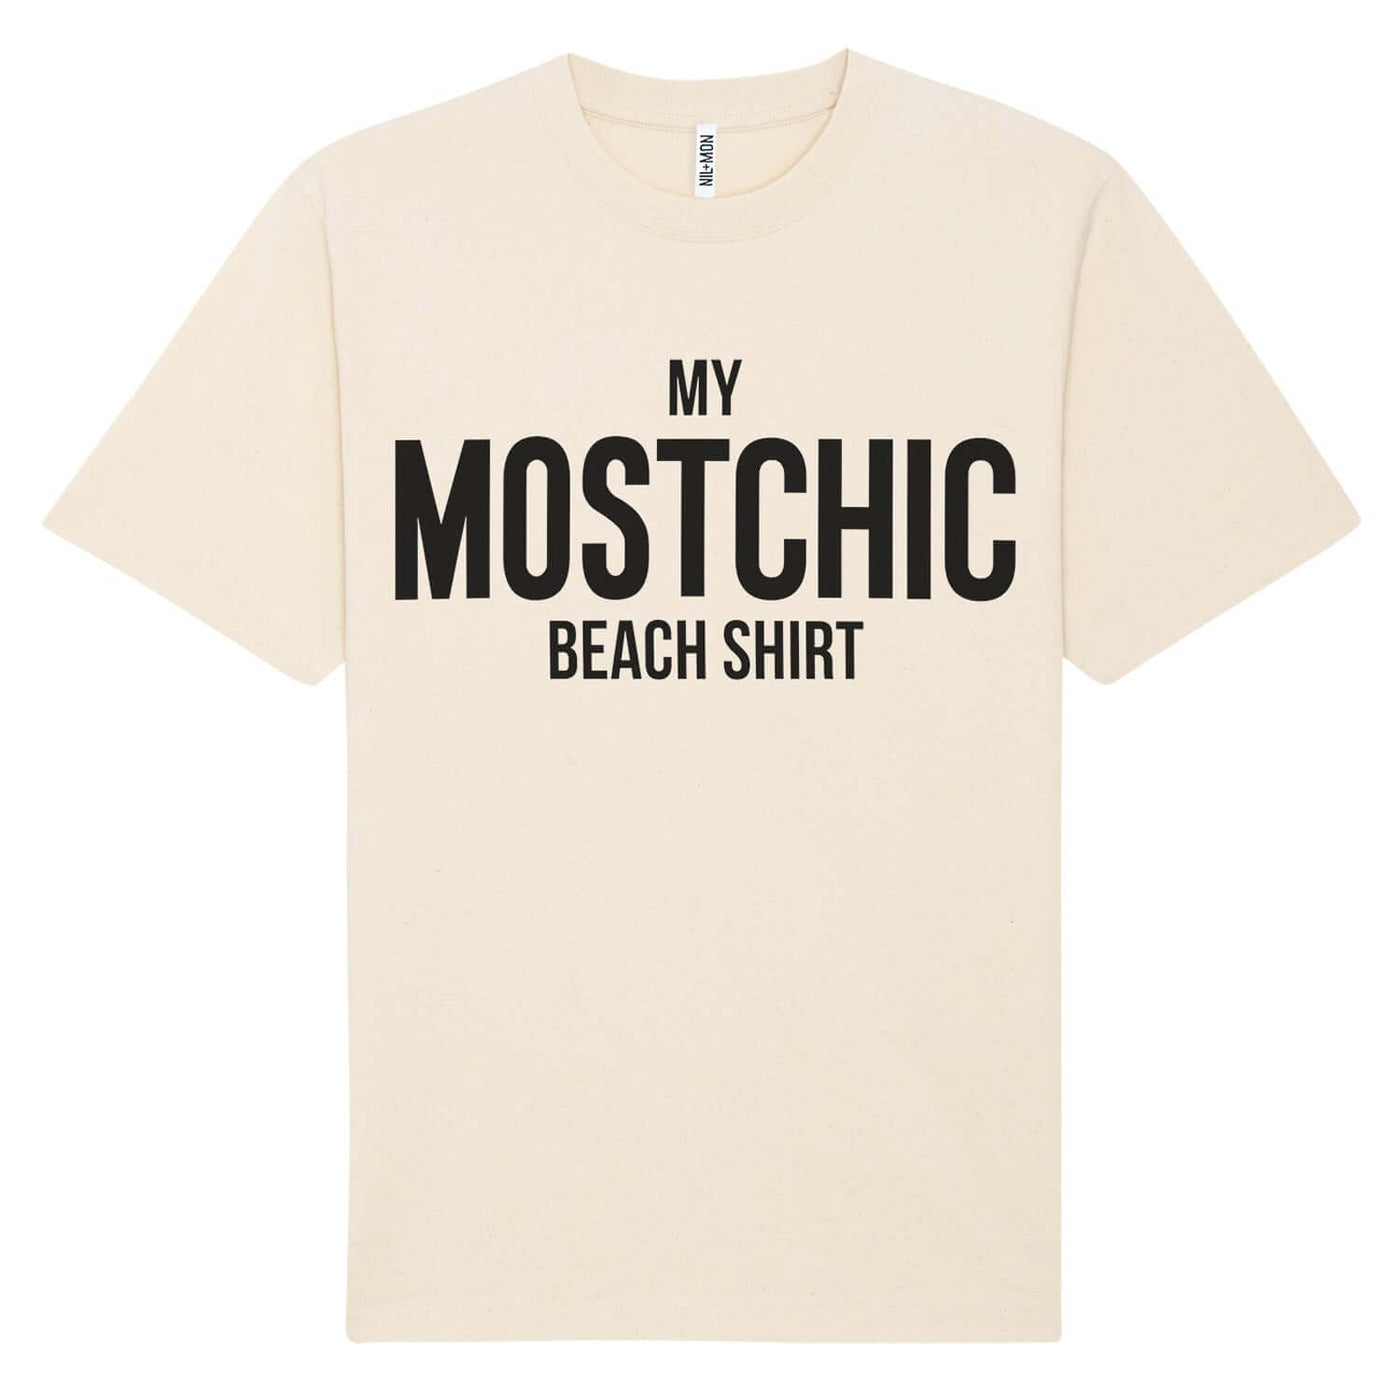 XXL Beach Shirt "Mostchic" - natural